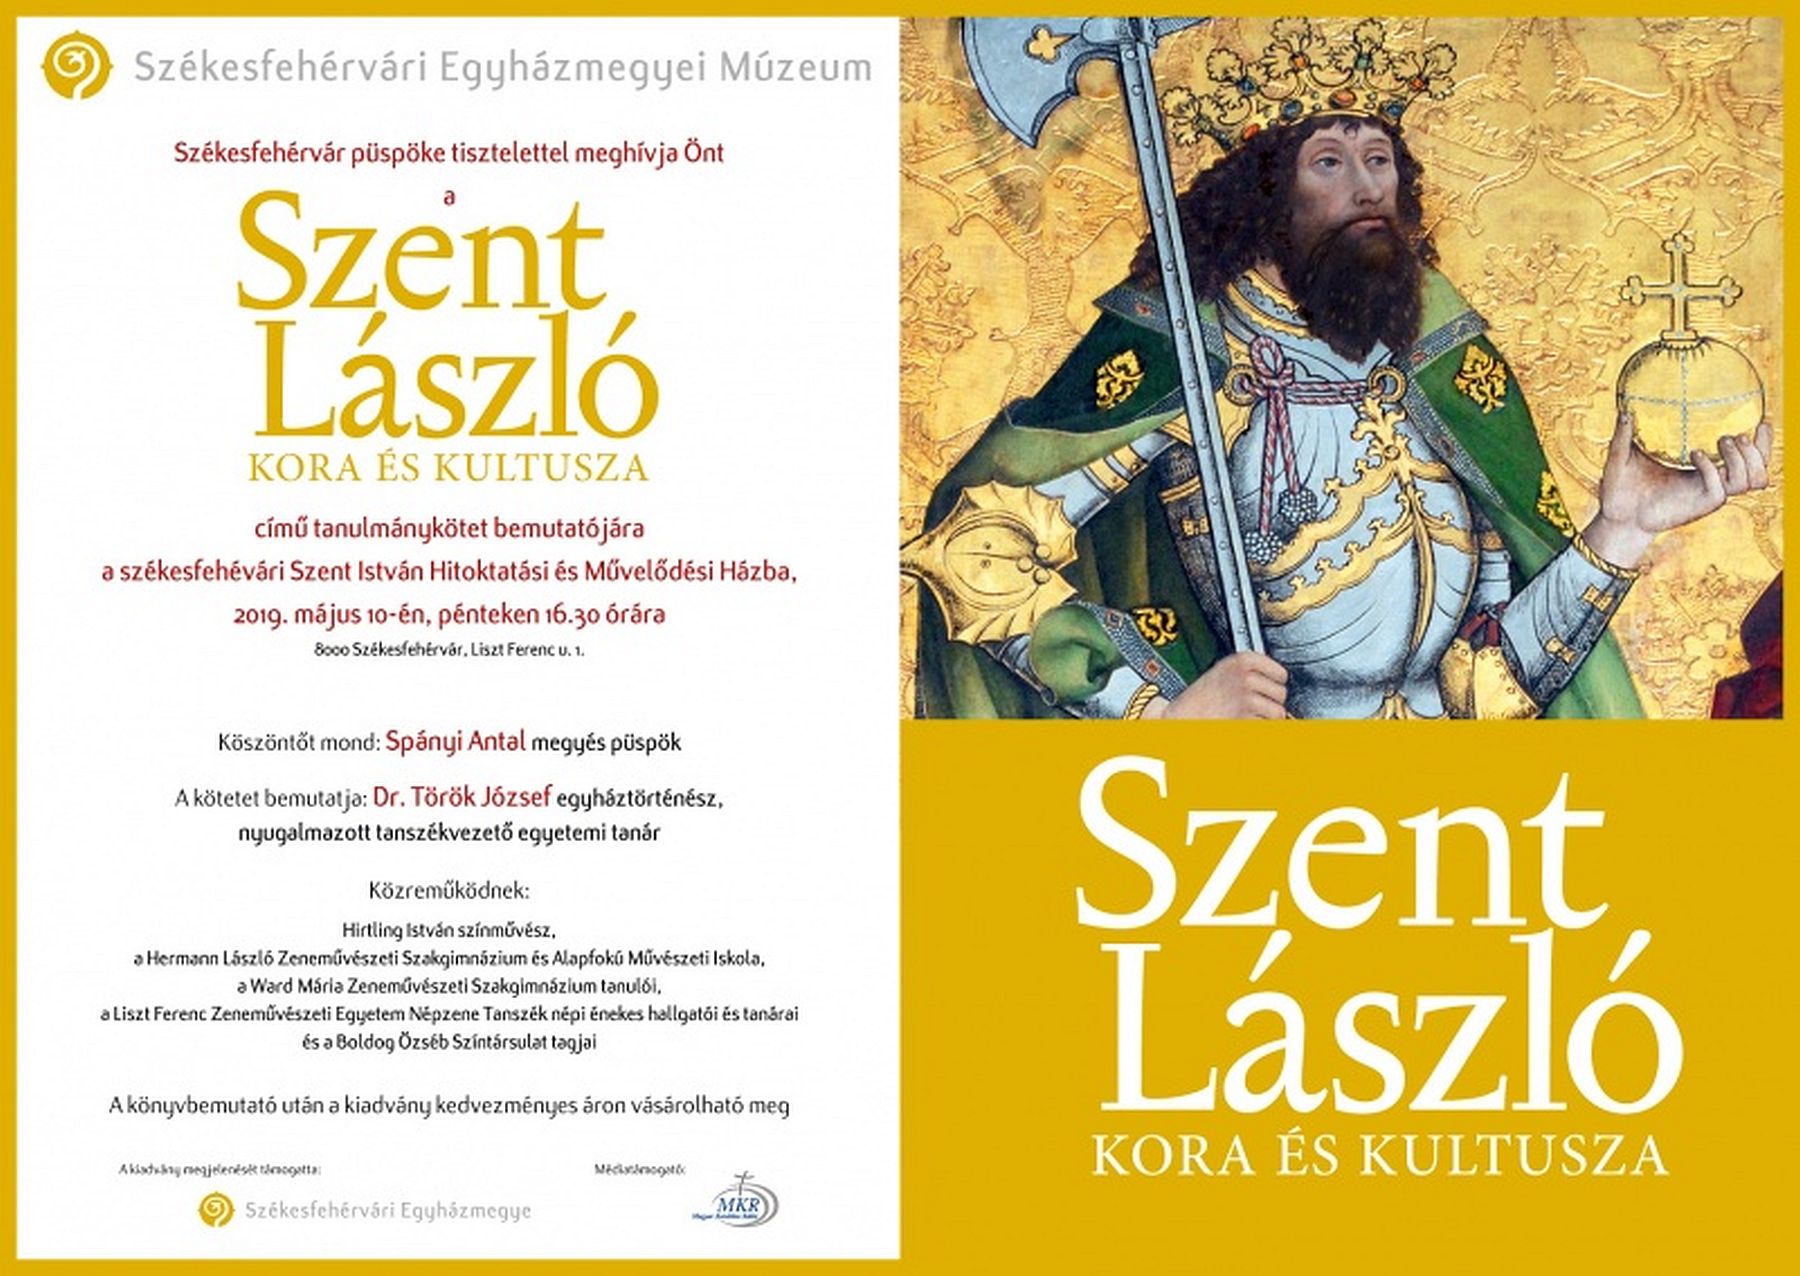 Szent László kora és kultusza - kötetbemutató a Szent István Művelődési Házban